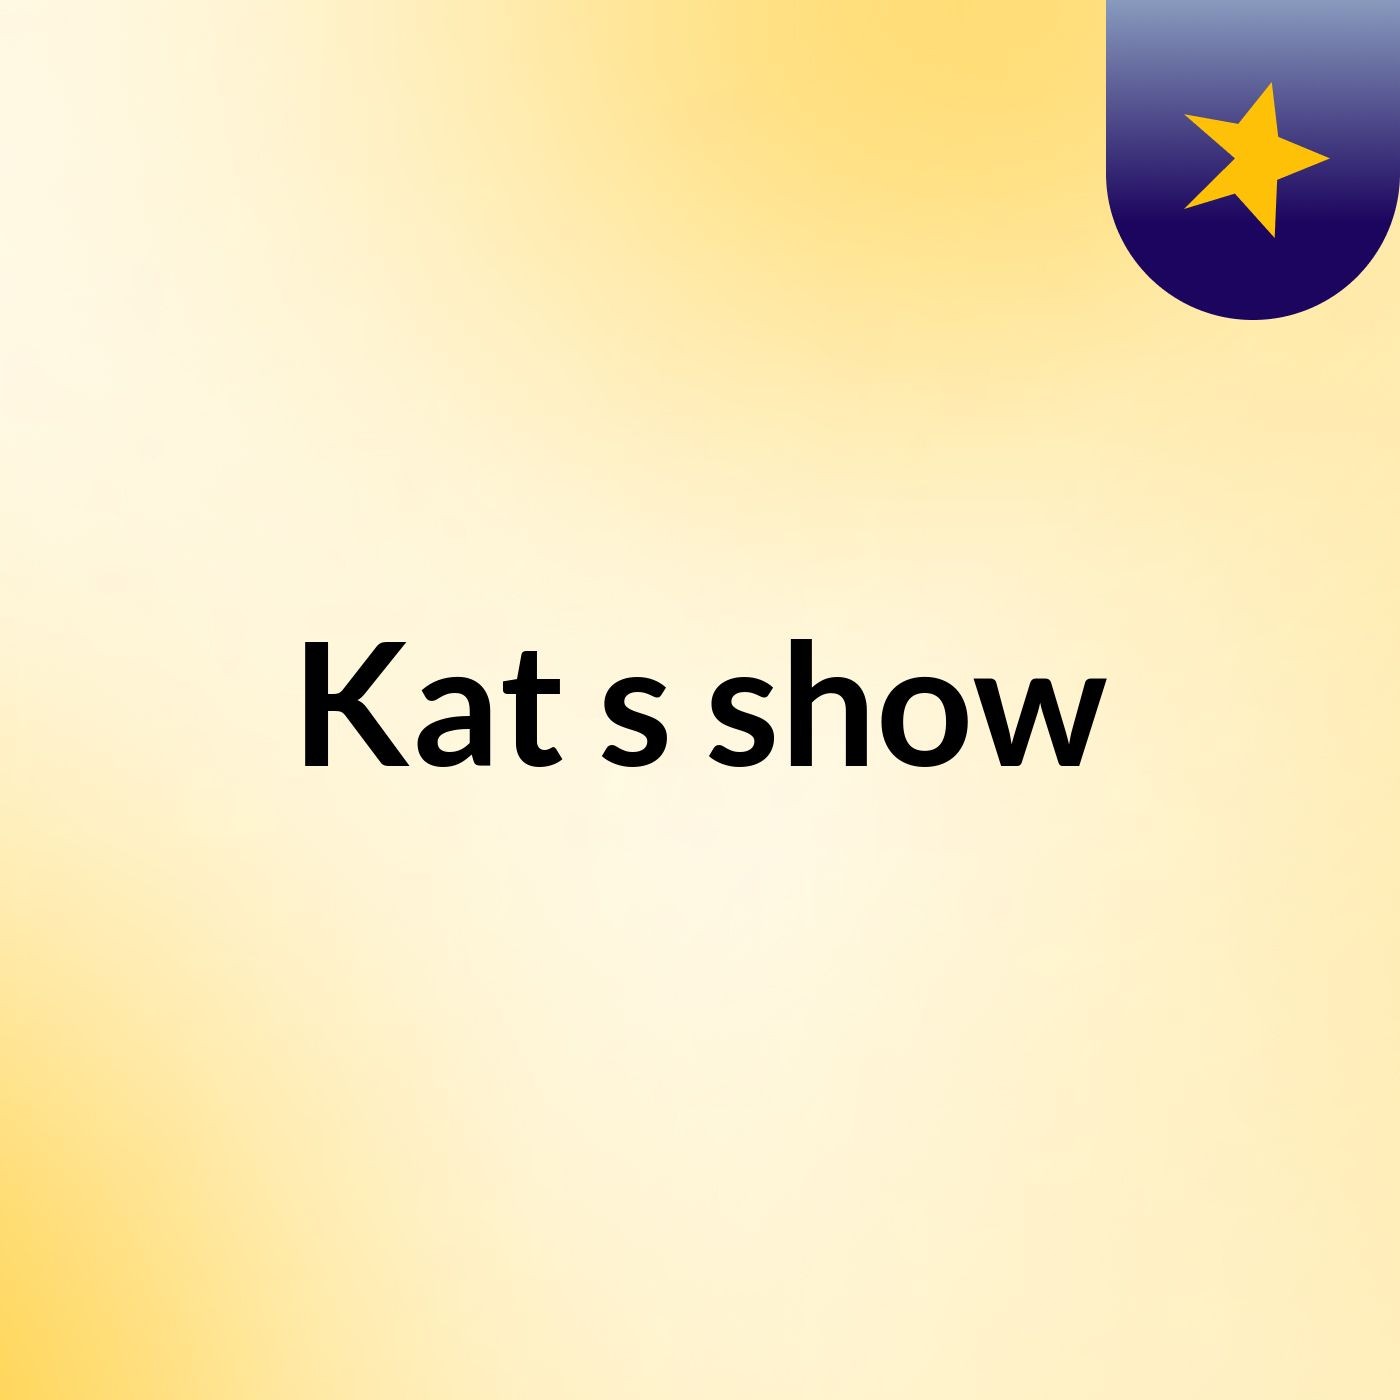 Kat's show